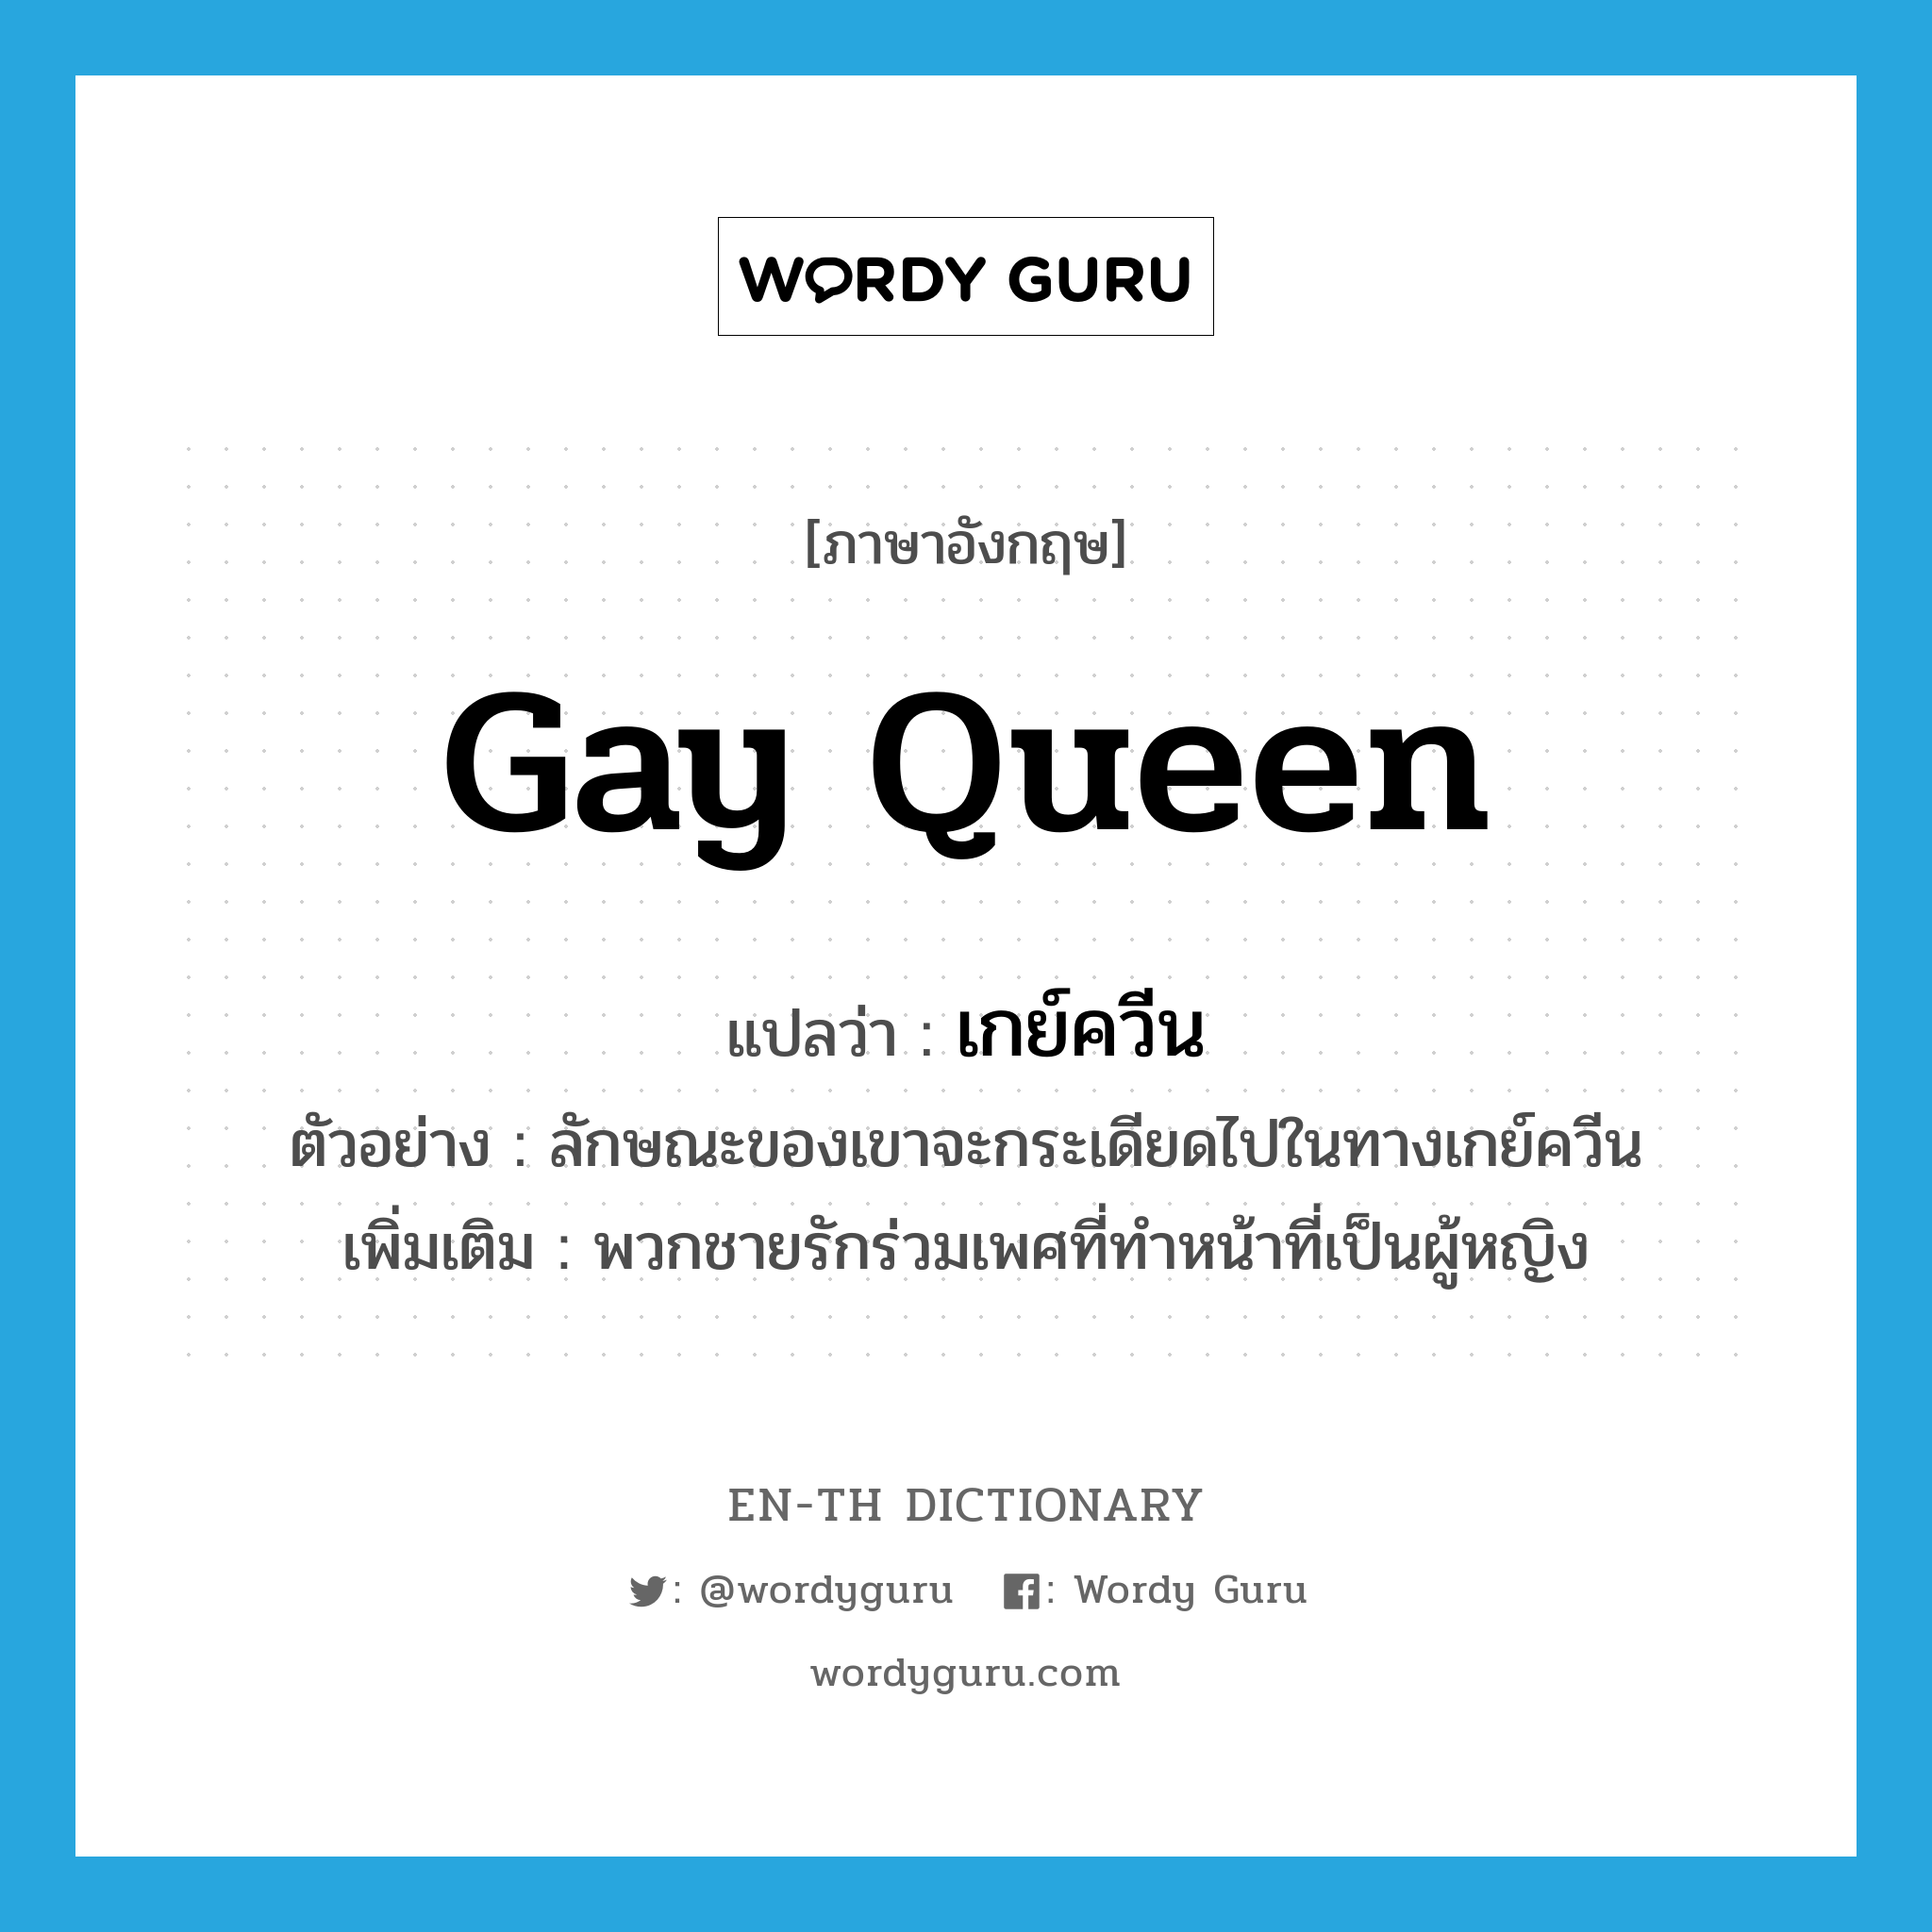 Gay Queen แปลว่า?, คำศัพท์ภาษาอังกฤษ Gay Queen แปลว่า เกย์ควีน ประเภท N ตัวอย่าง ลักษณะของเขาจะกระเดียดไปในทางเกย์ควีน เพิ่มเติม พวกชายรักร่วมเพศที่ทำหน้าที่เป็นผู้หญิง หมวด N